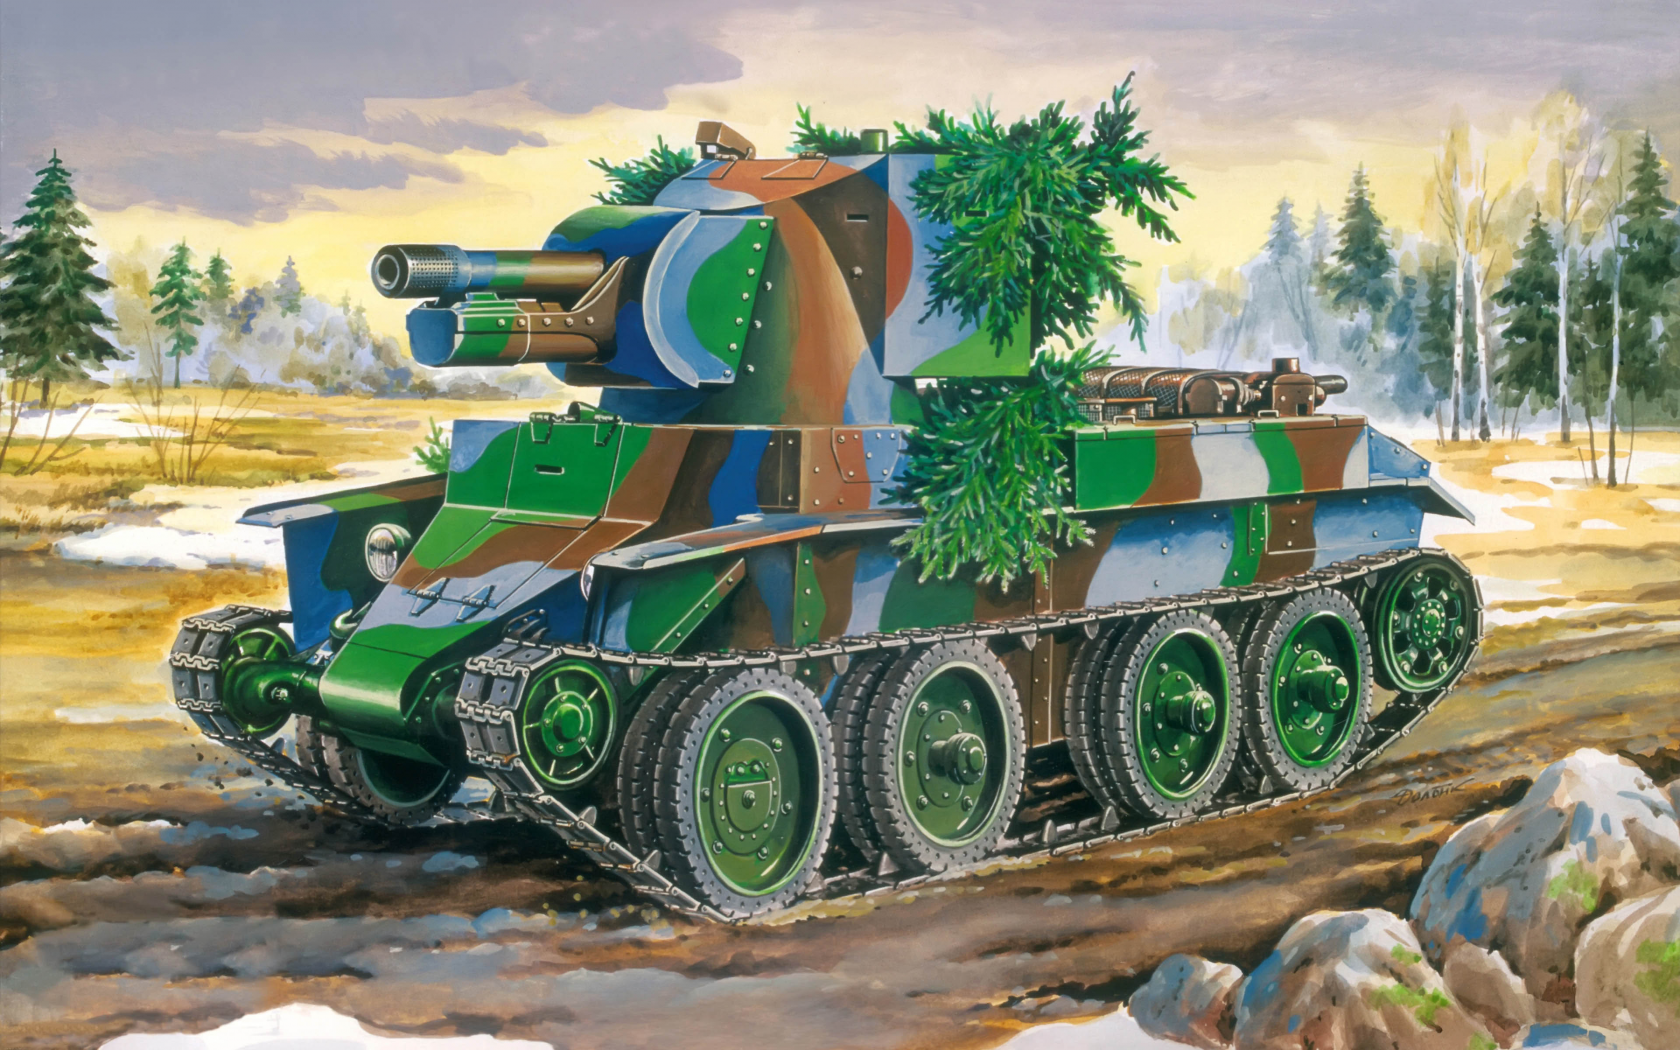 Арт, орудие, танк, бт-42, штурмовое, сау, финское, периода